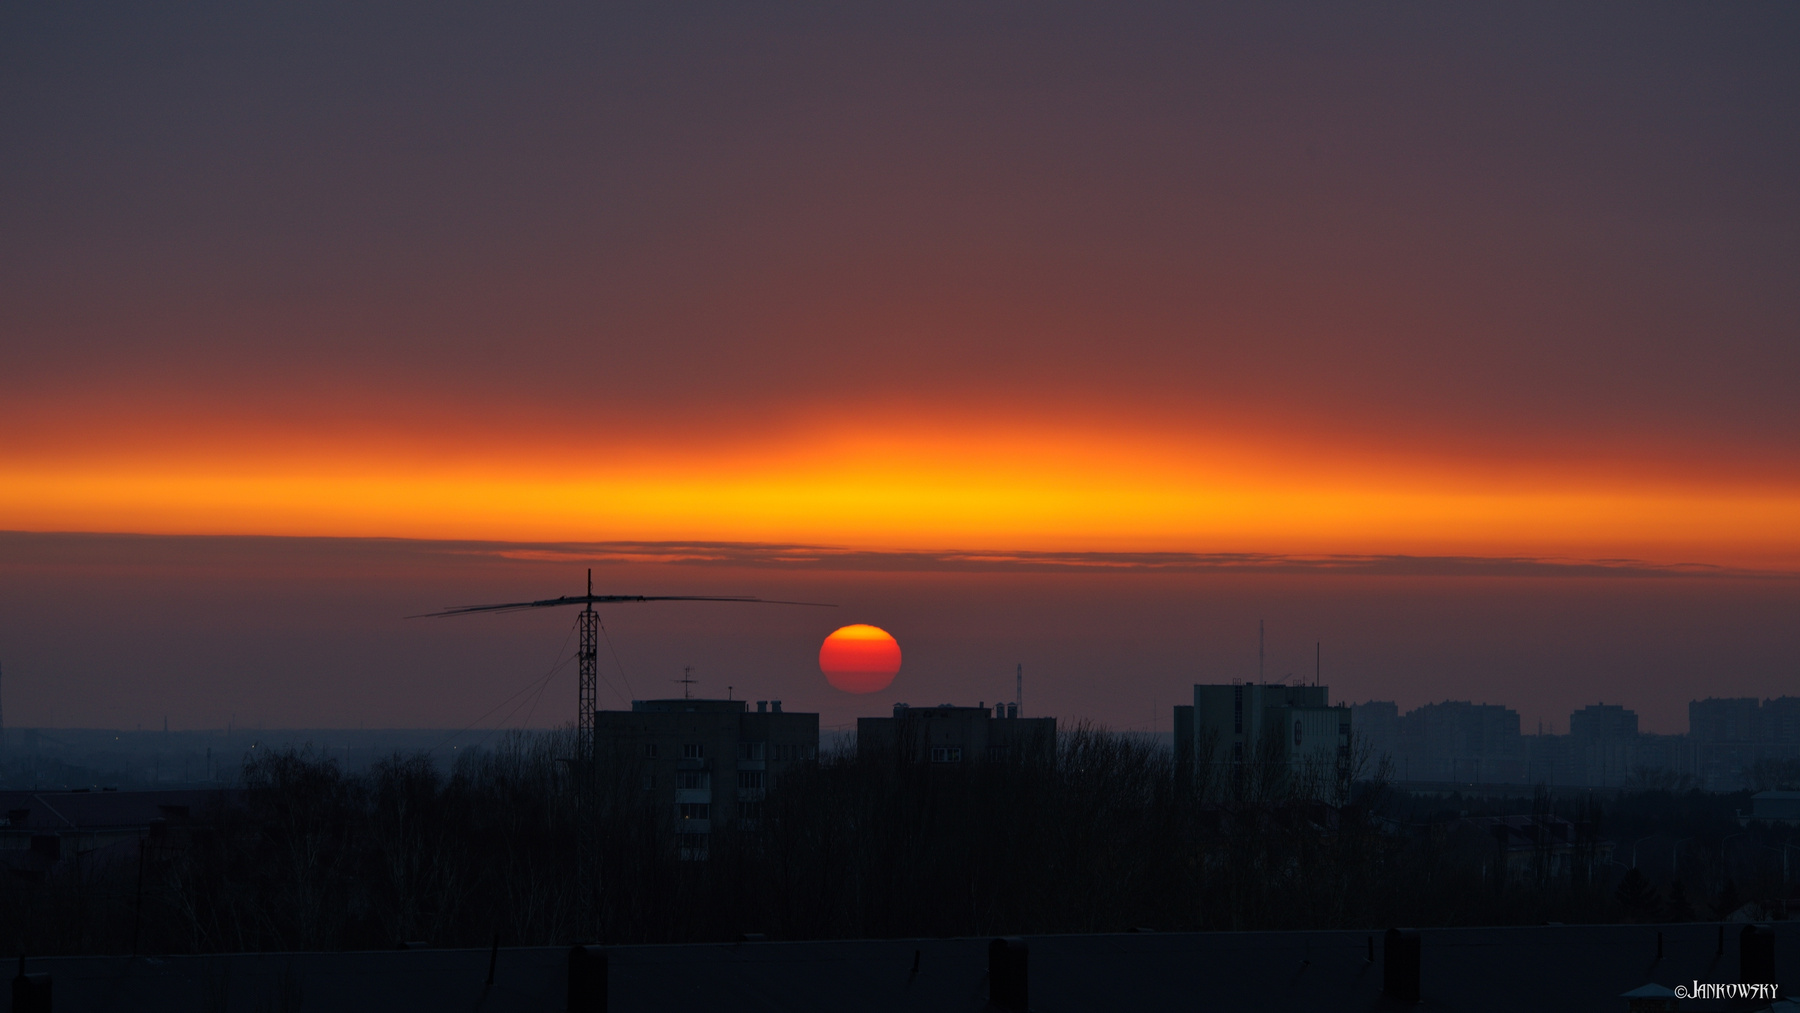 WOW-Градиент 5.04.21 омск закат градиент полоса облачность смог оранжевый пасмурно балкон